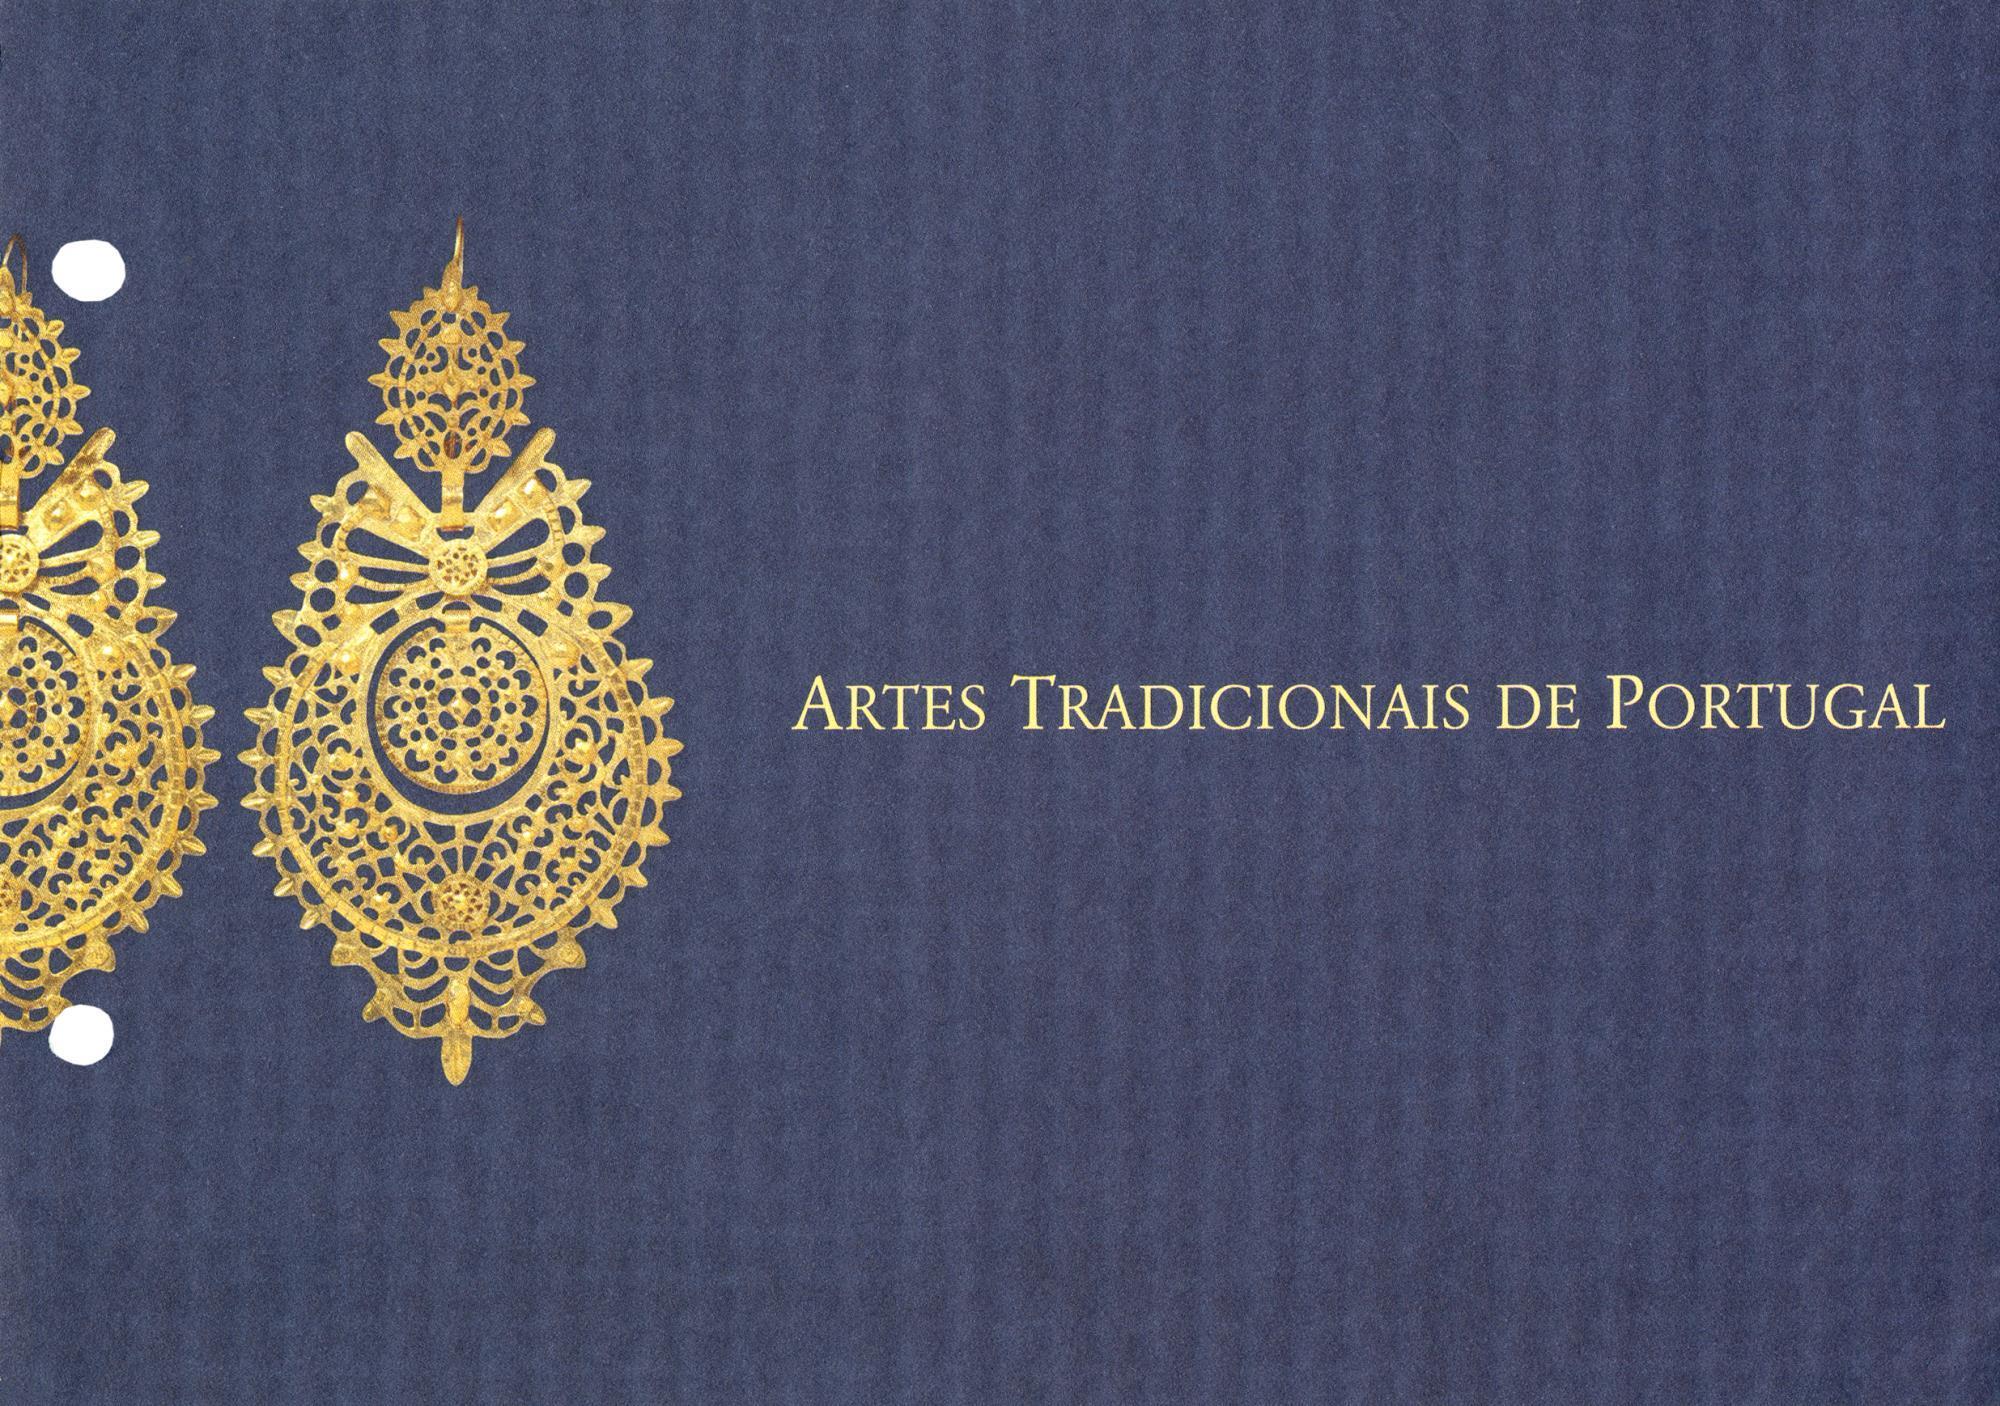 Artes Tradicionais de Portugal